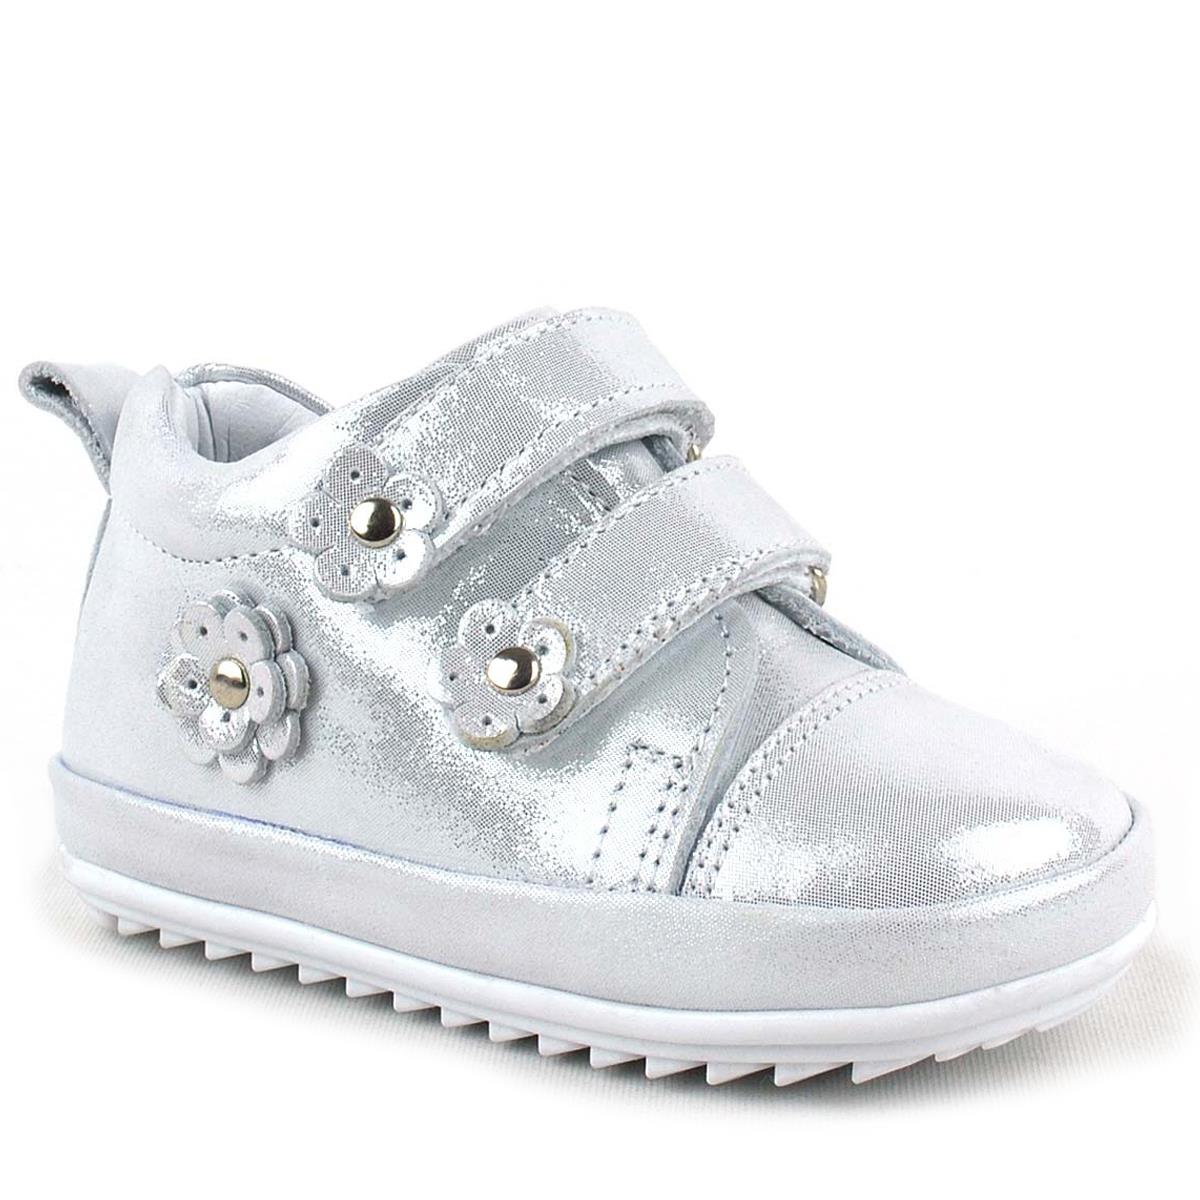 Rakerplus Limpo Hakiki Deri Gümüş Anatomik Kız Bebek İlk Adım Ayakkabısı  R411-G-S